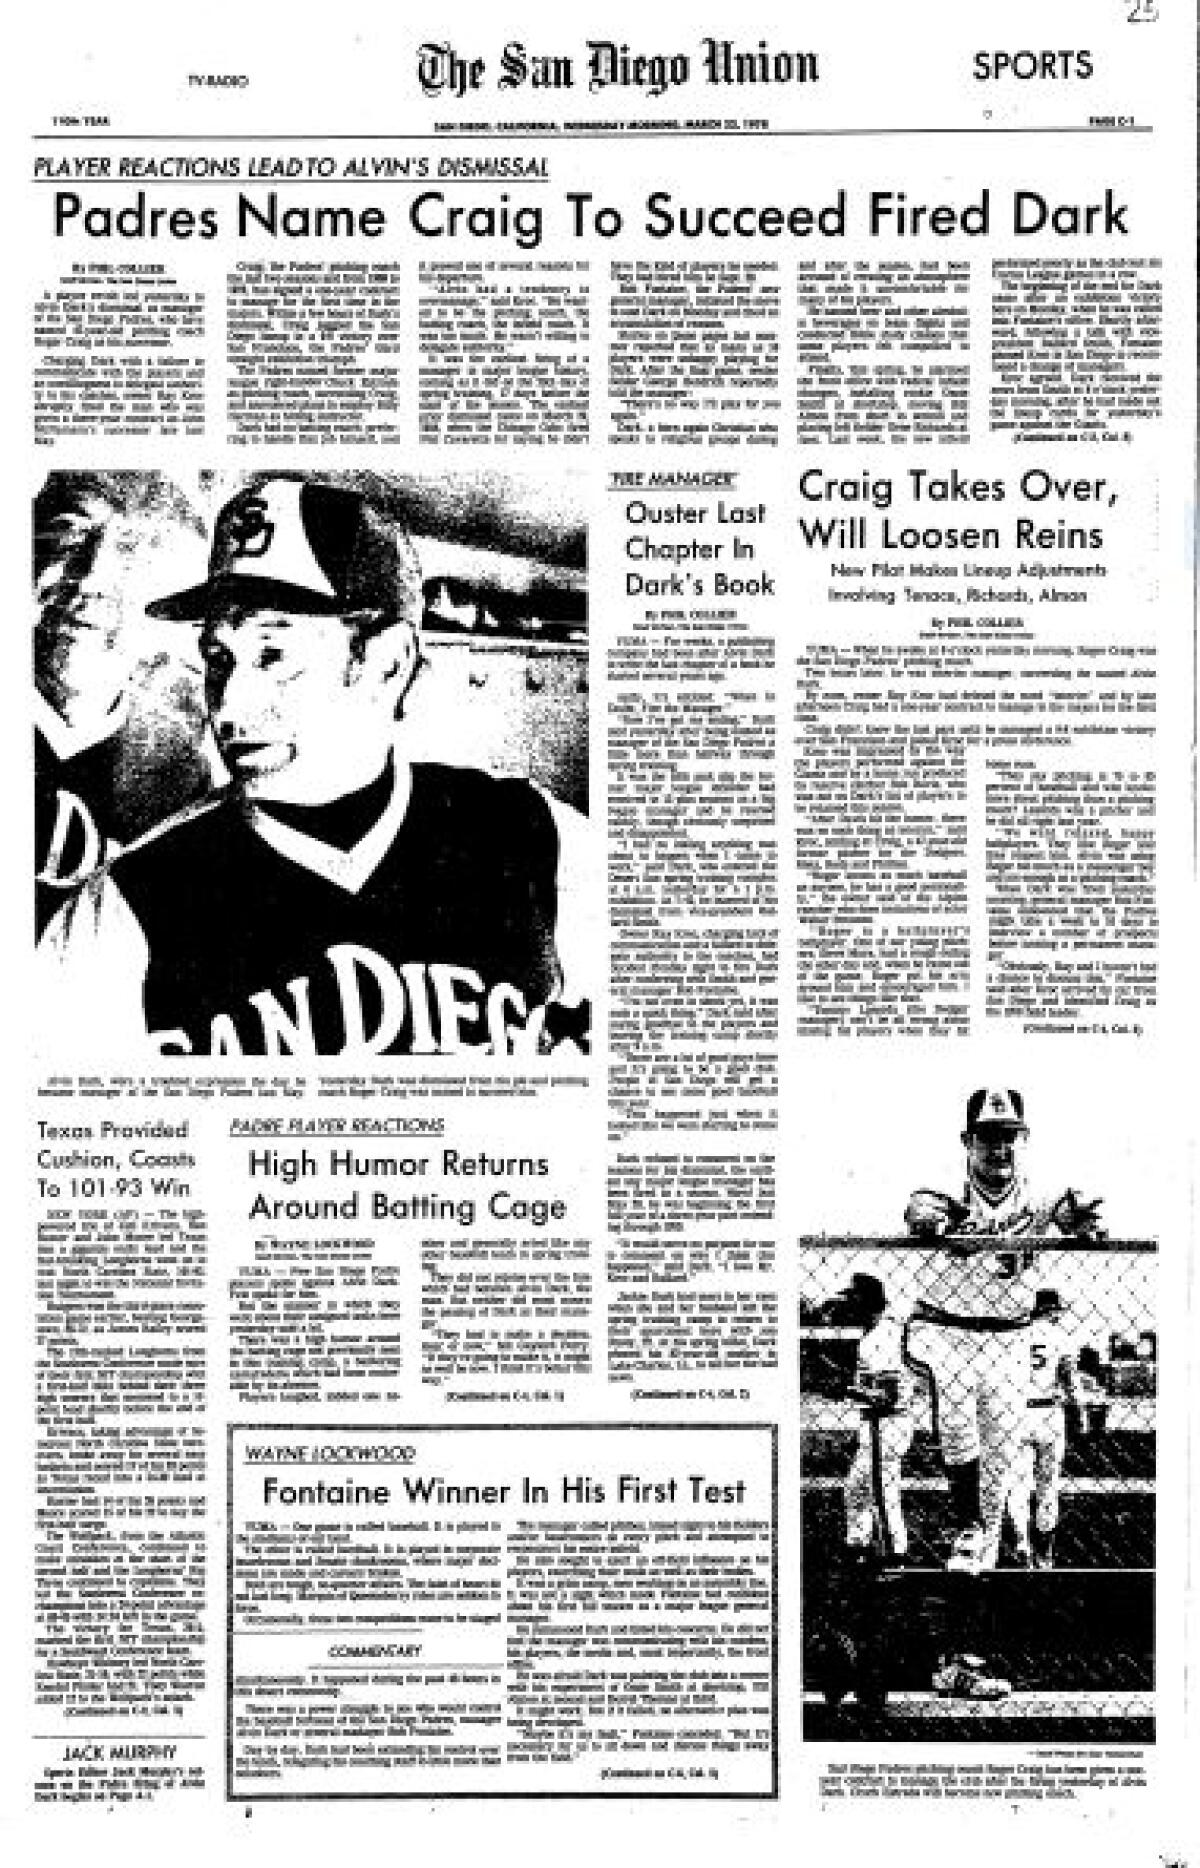 1978 Roger Craig Game Worn San Diego Padres Jersey.  Baseball